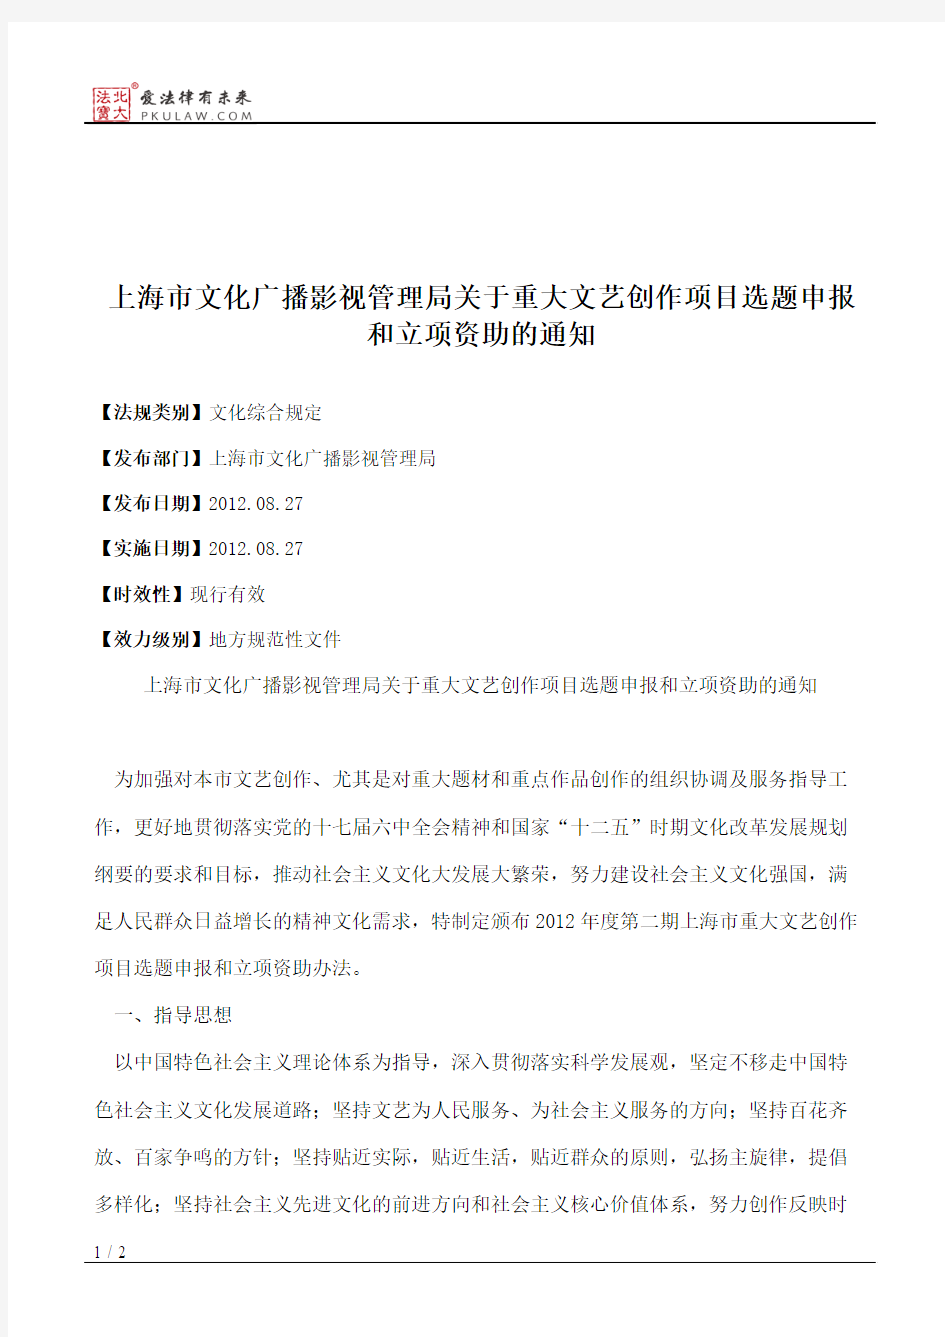 上海市文化广播影视管理局关于重大文艺创作项目选题申报和立项资